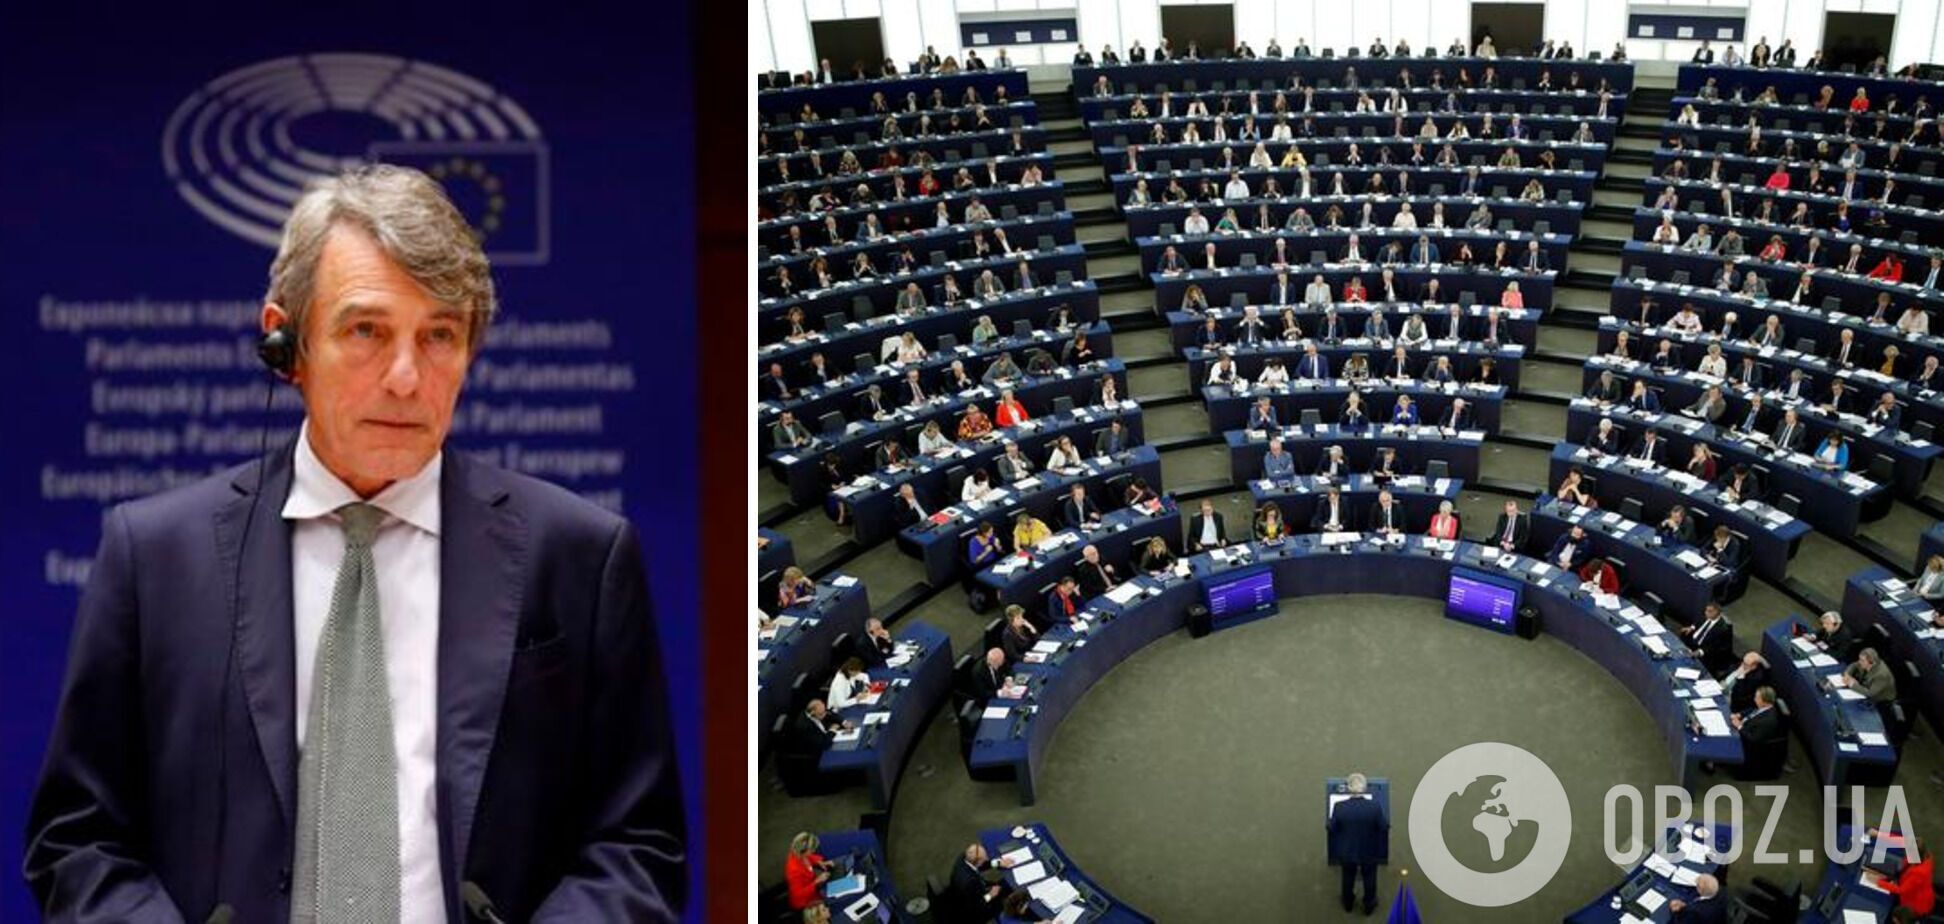 Давид Сассоли занимал должность главы Европарламента с 2019 года